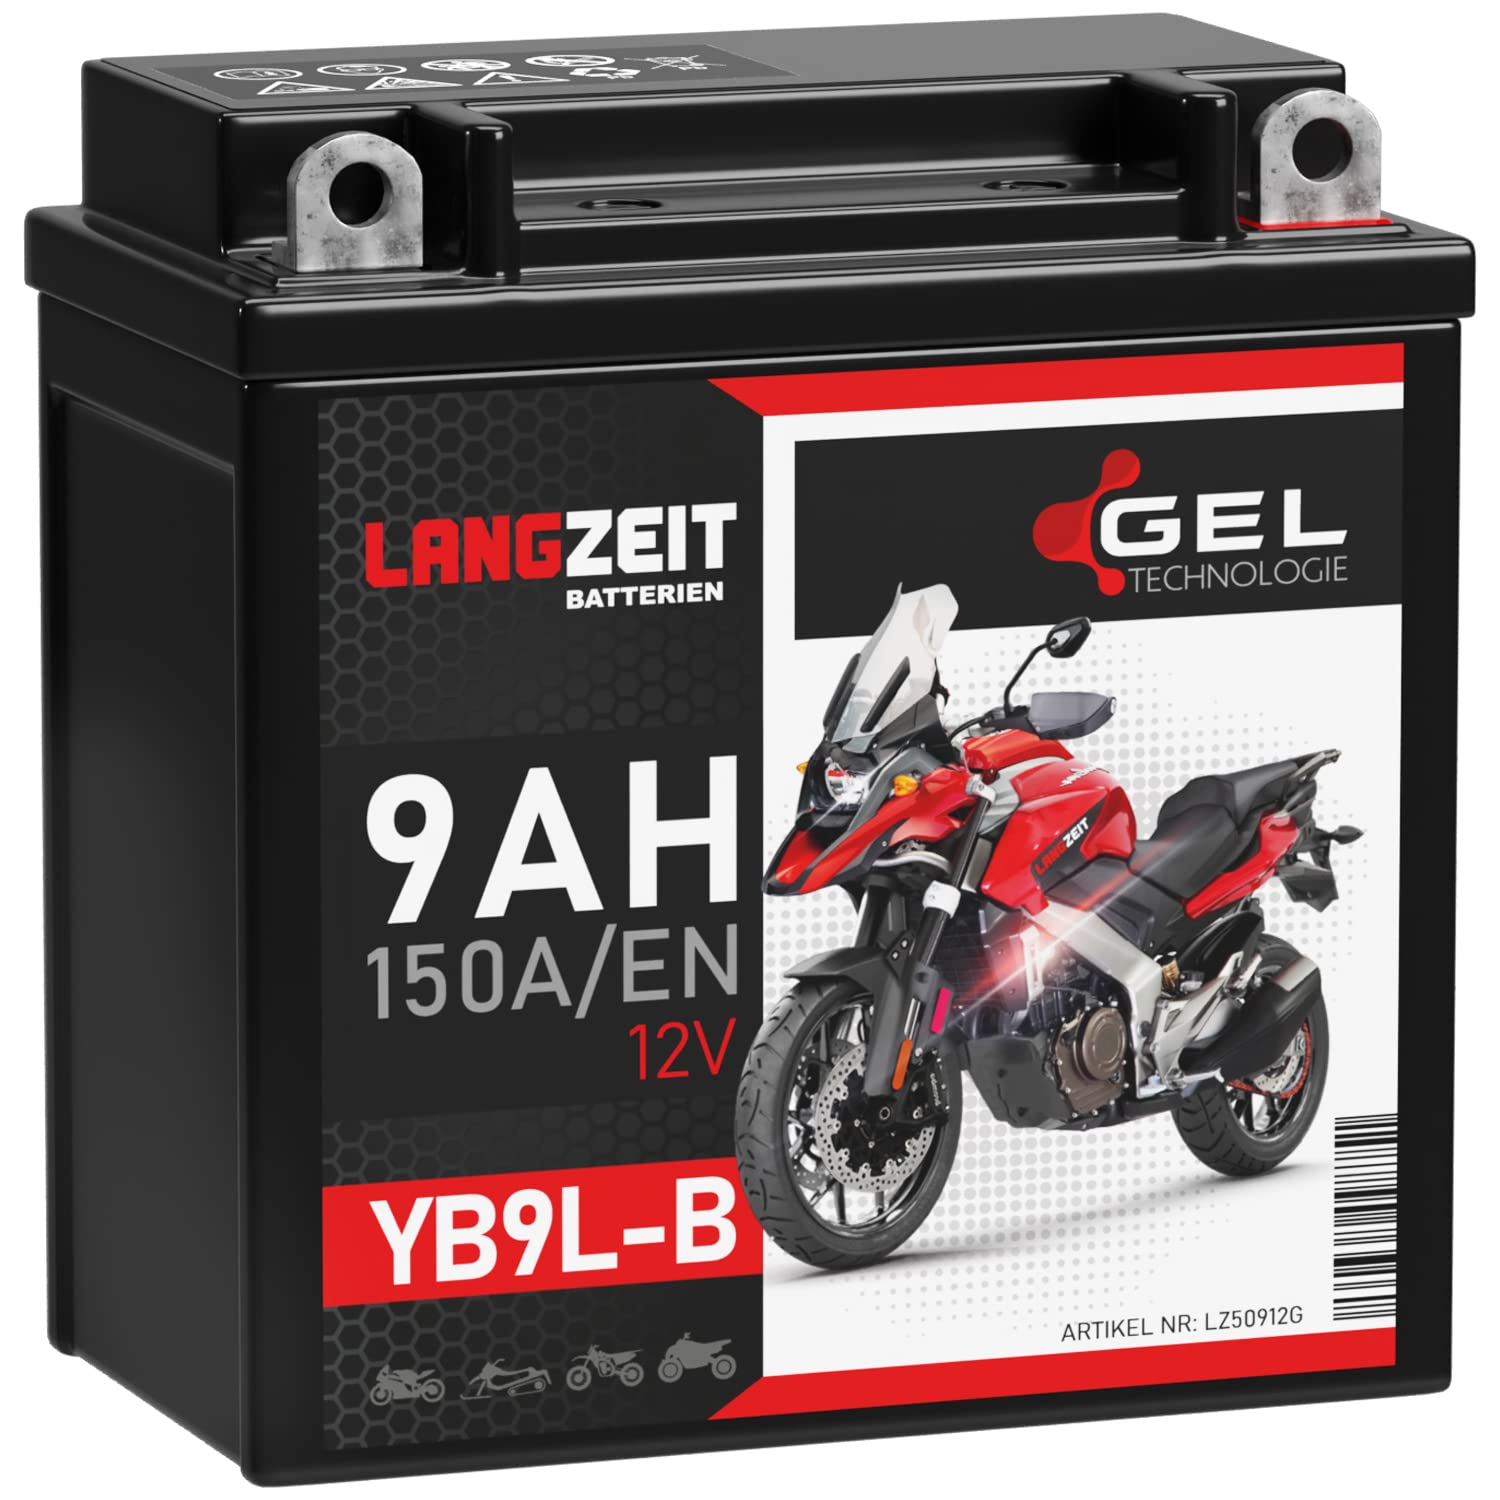 LANGZEIT YB9L-B Motorradbatterie 12V 9Ah 150A/EN GEL Batterie 12V 50912 YB9L-A2 12N7-3B 12N9-3B doppelte Lebensdauer vorgeladen auslaufsicher wartungsfrei von LANGZEIT Batterien